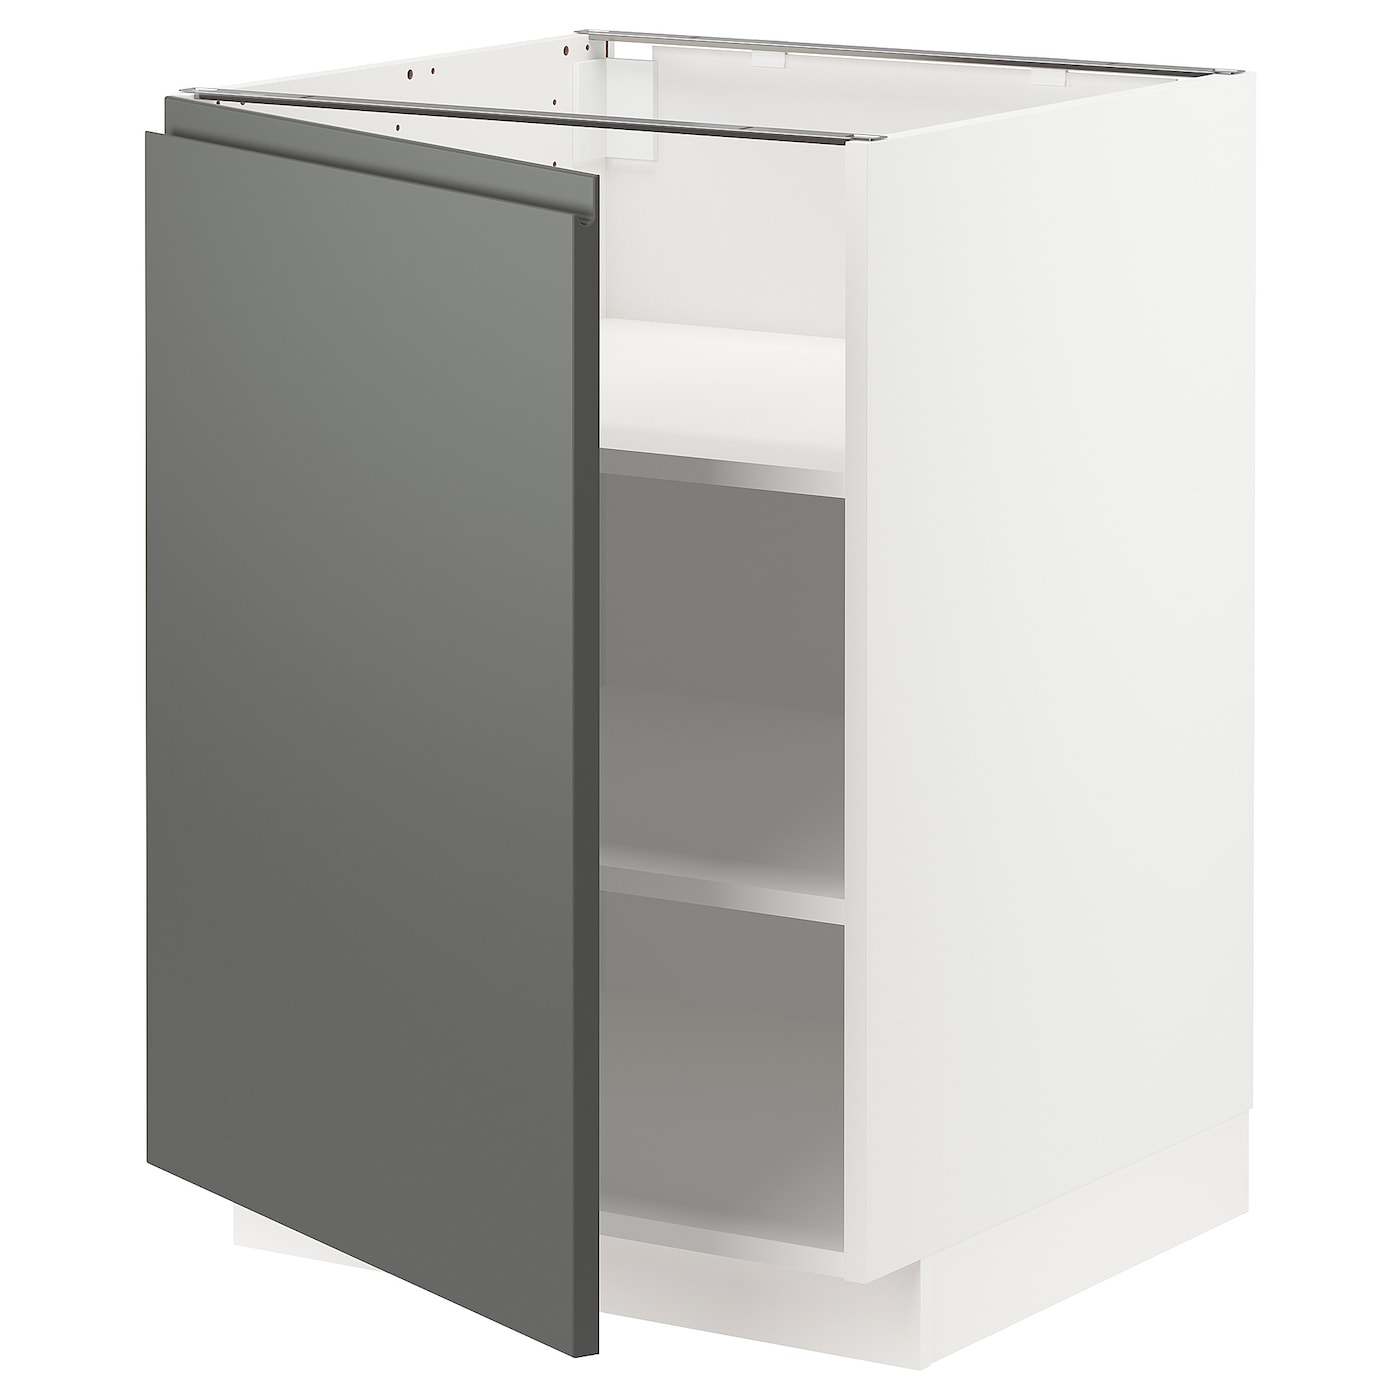 Напольный шкаф - IKEA METOD, 88x62x60см, белый/темно-серый, МЕТОД ИКЕА